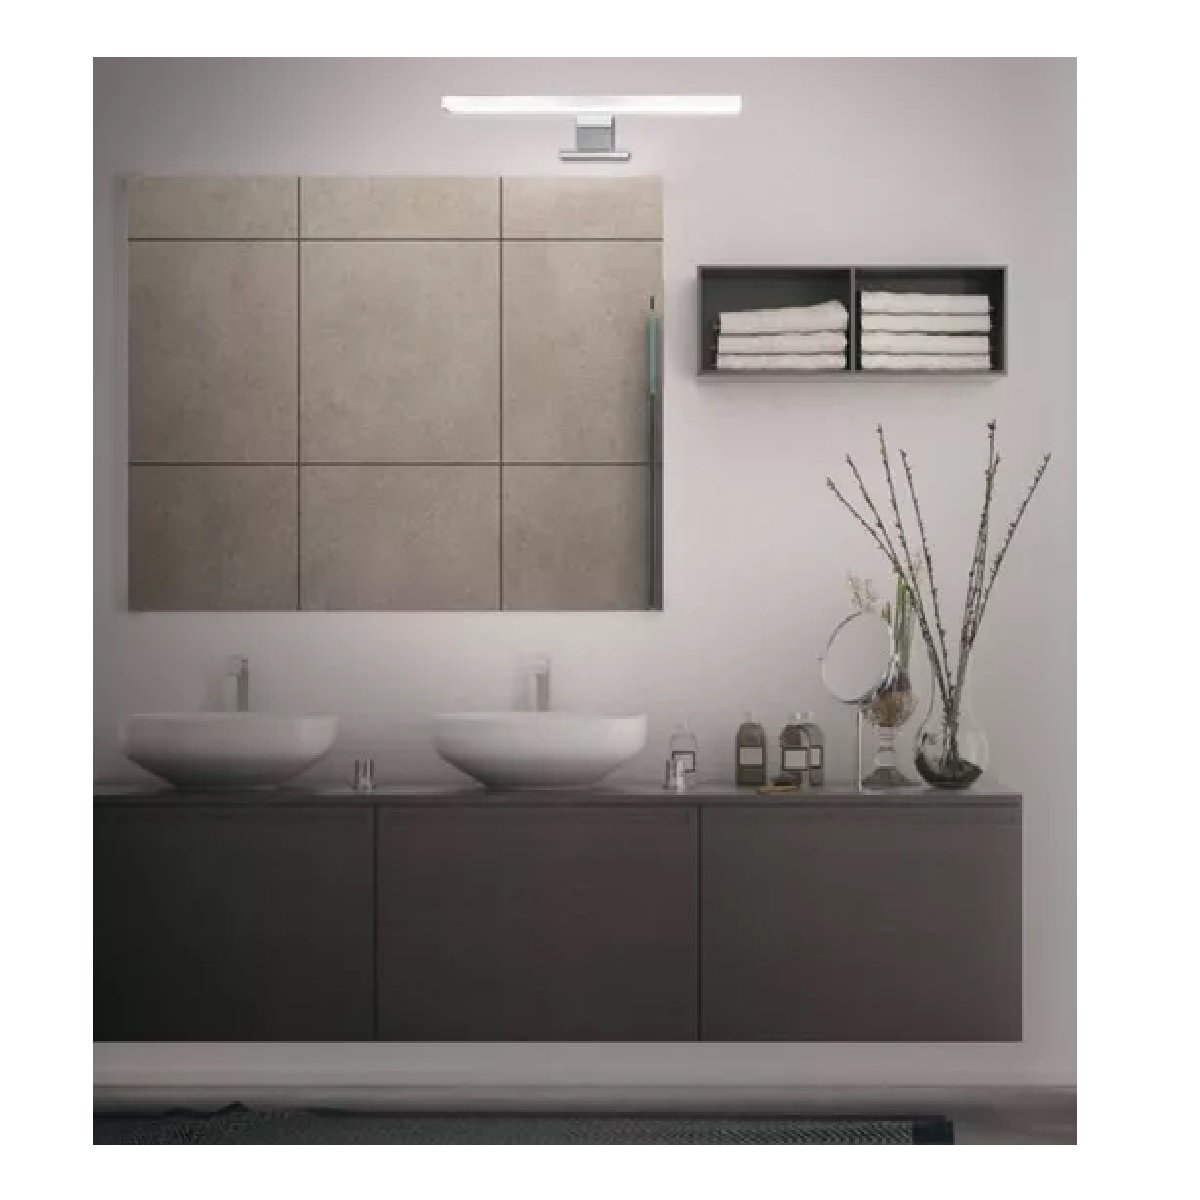 Luz espejo baño LED para espejo de 30cm 5W IP44